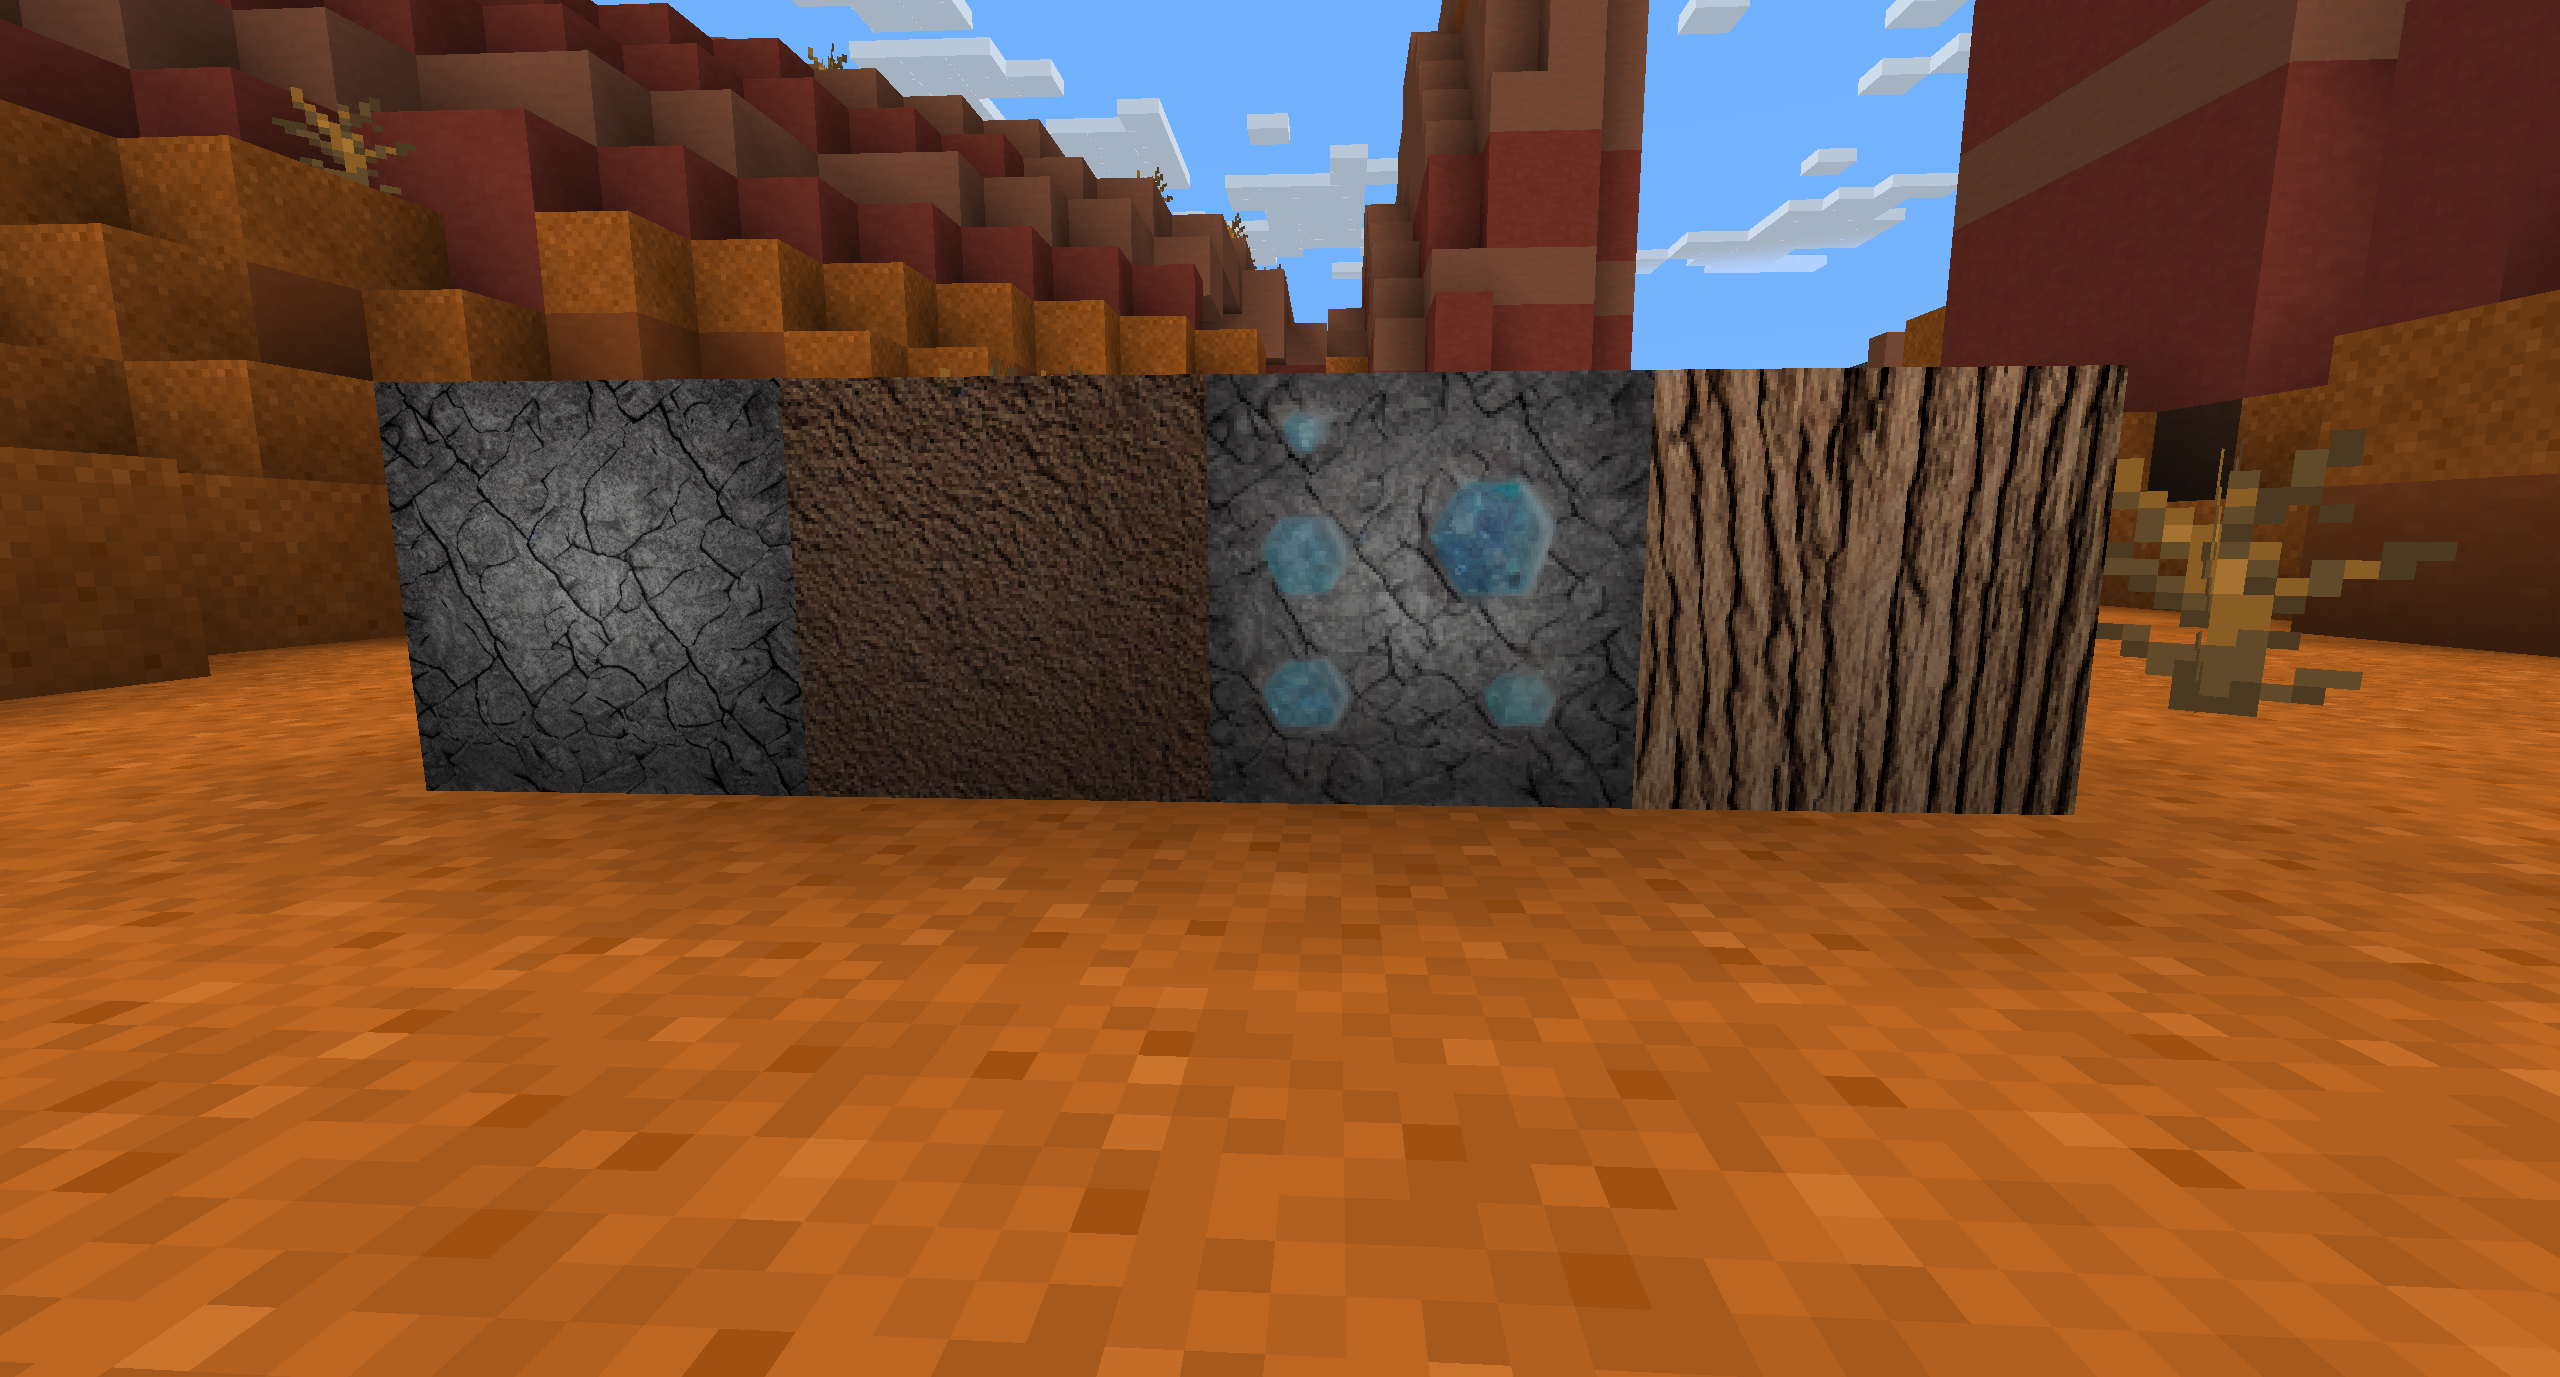 Nossas texturas exibidas no Minecraft.  Da esquerda para a direita: Pedra, Sujeira, Minério de Diamante, Carvalho.